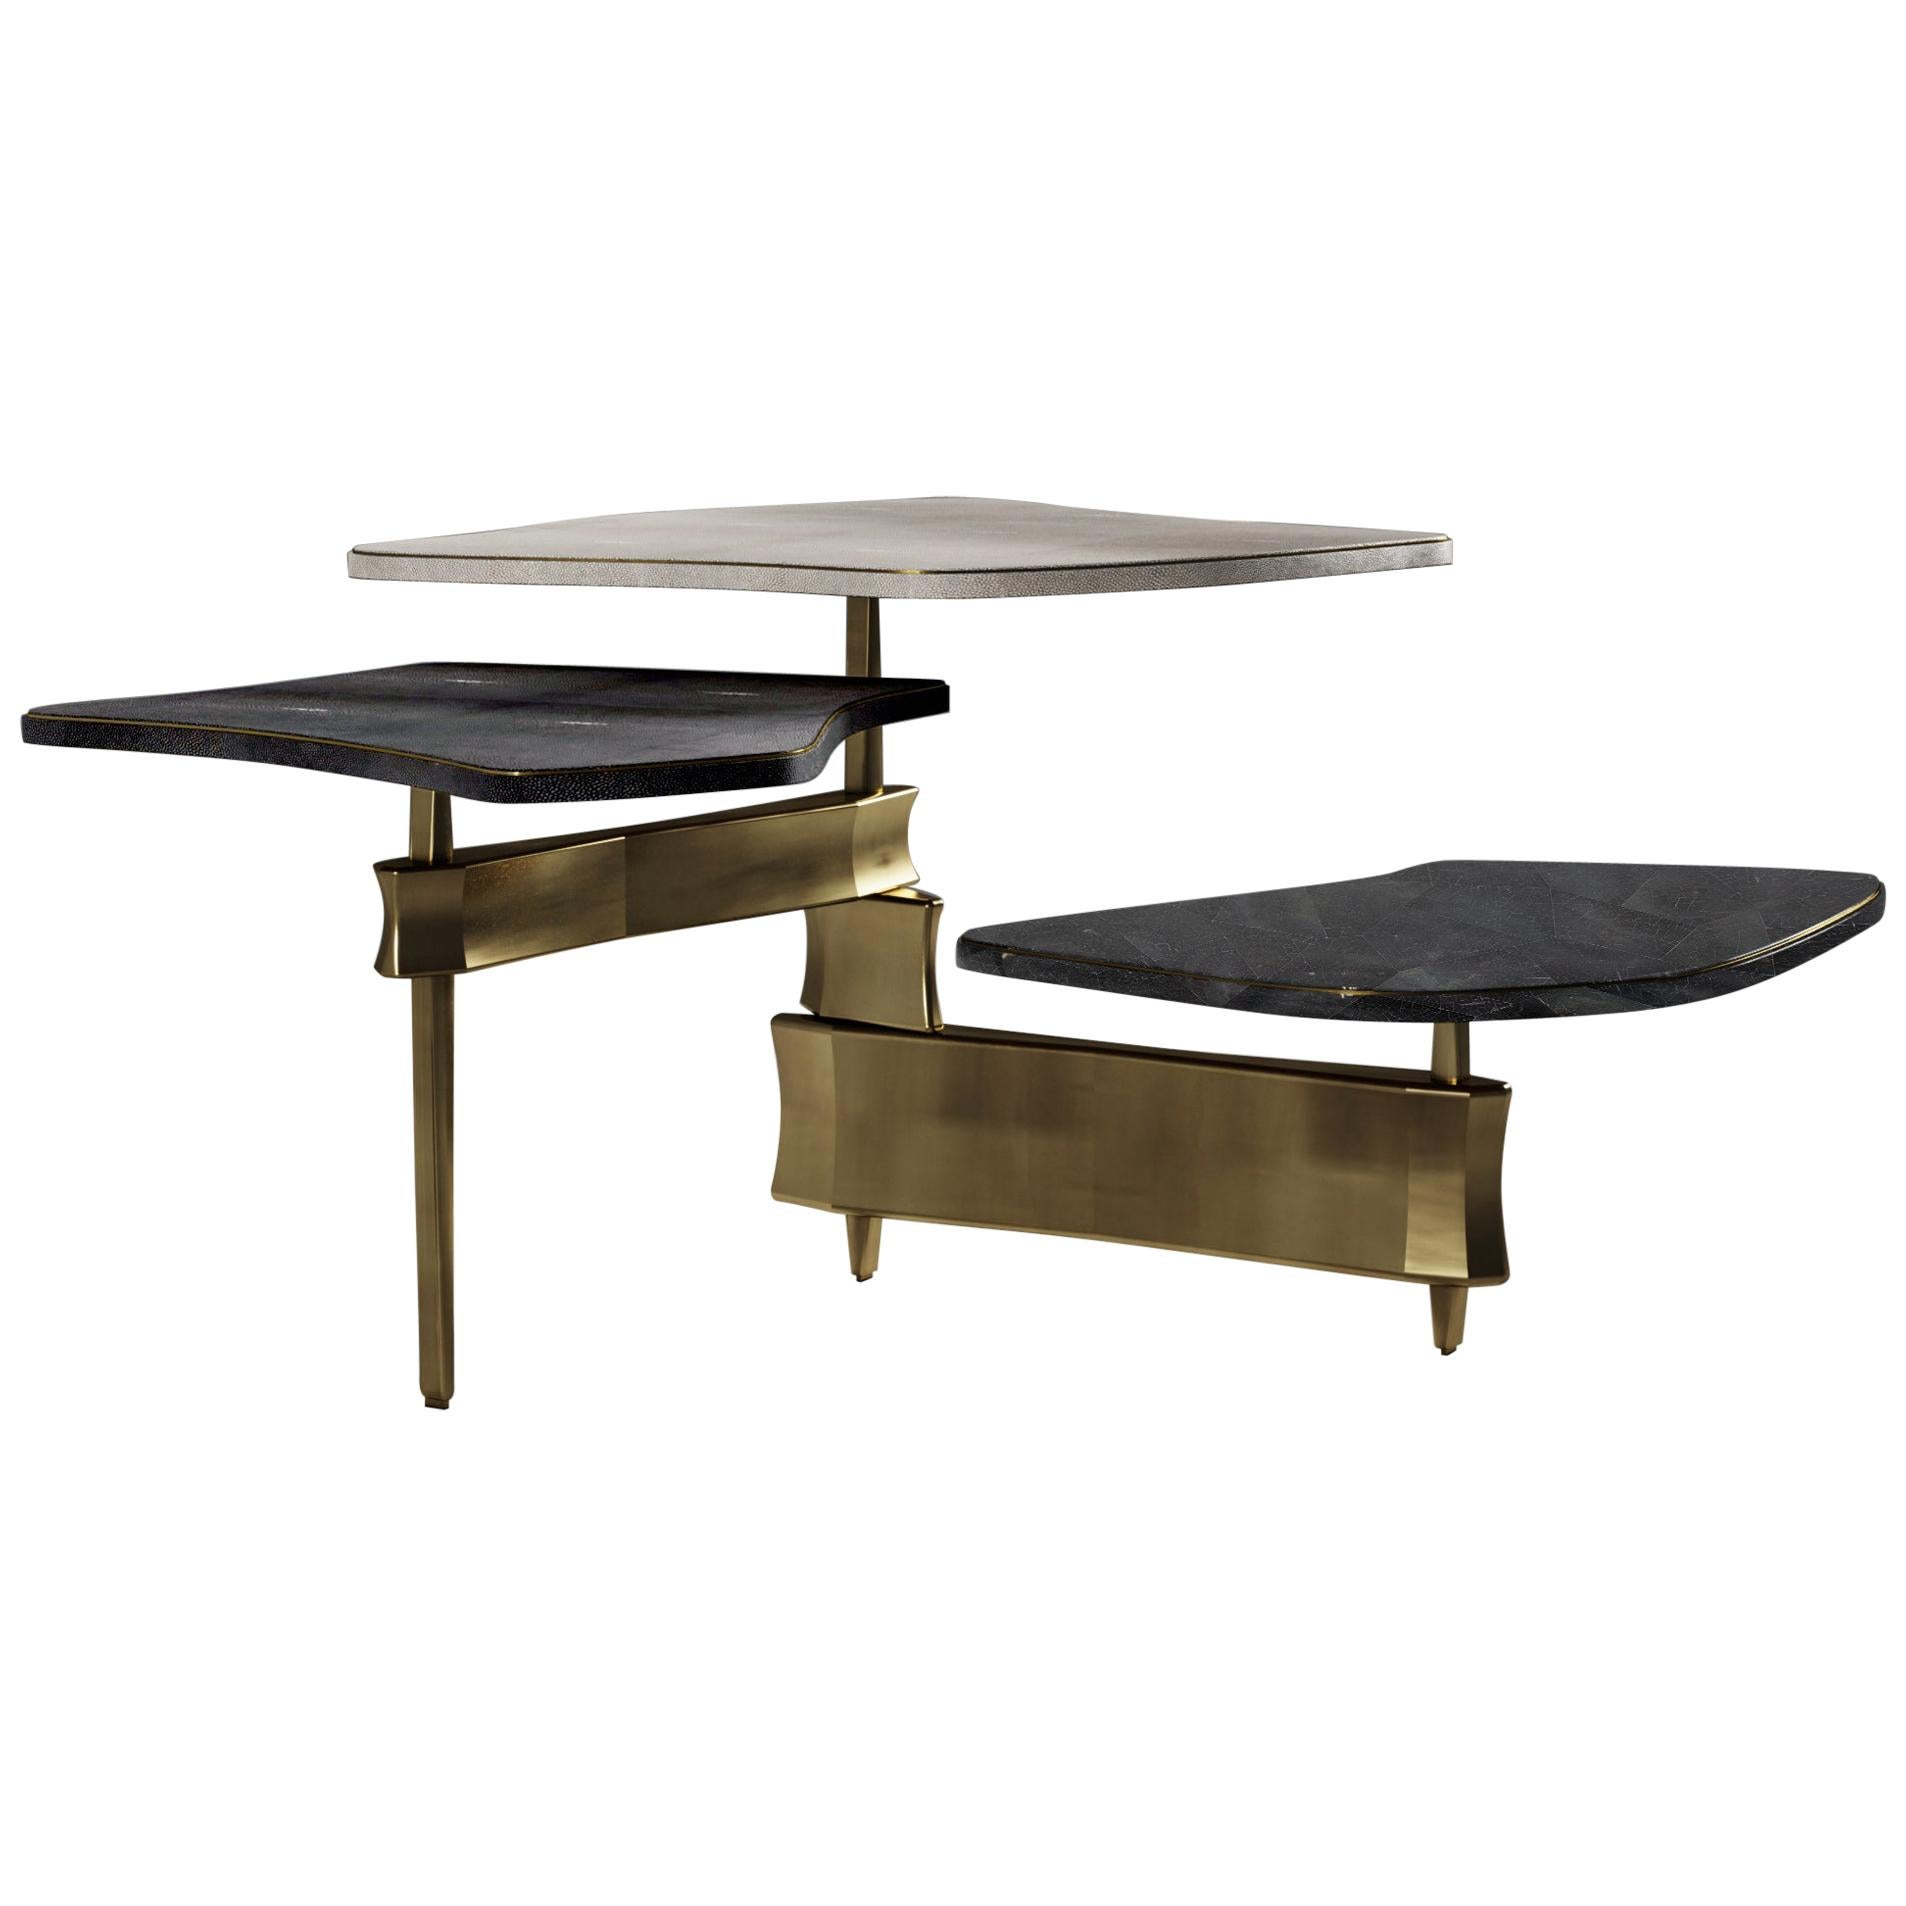 Table basse en galuchat avec motif coquillage et touches de laiton patiné bronze de Kifu Paris